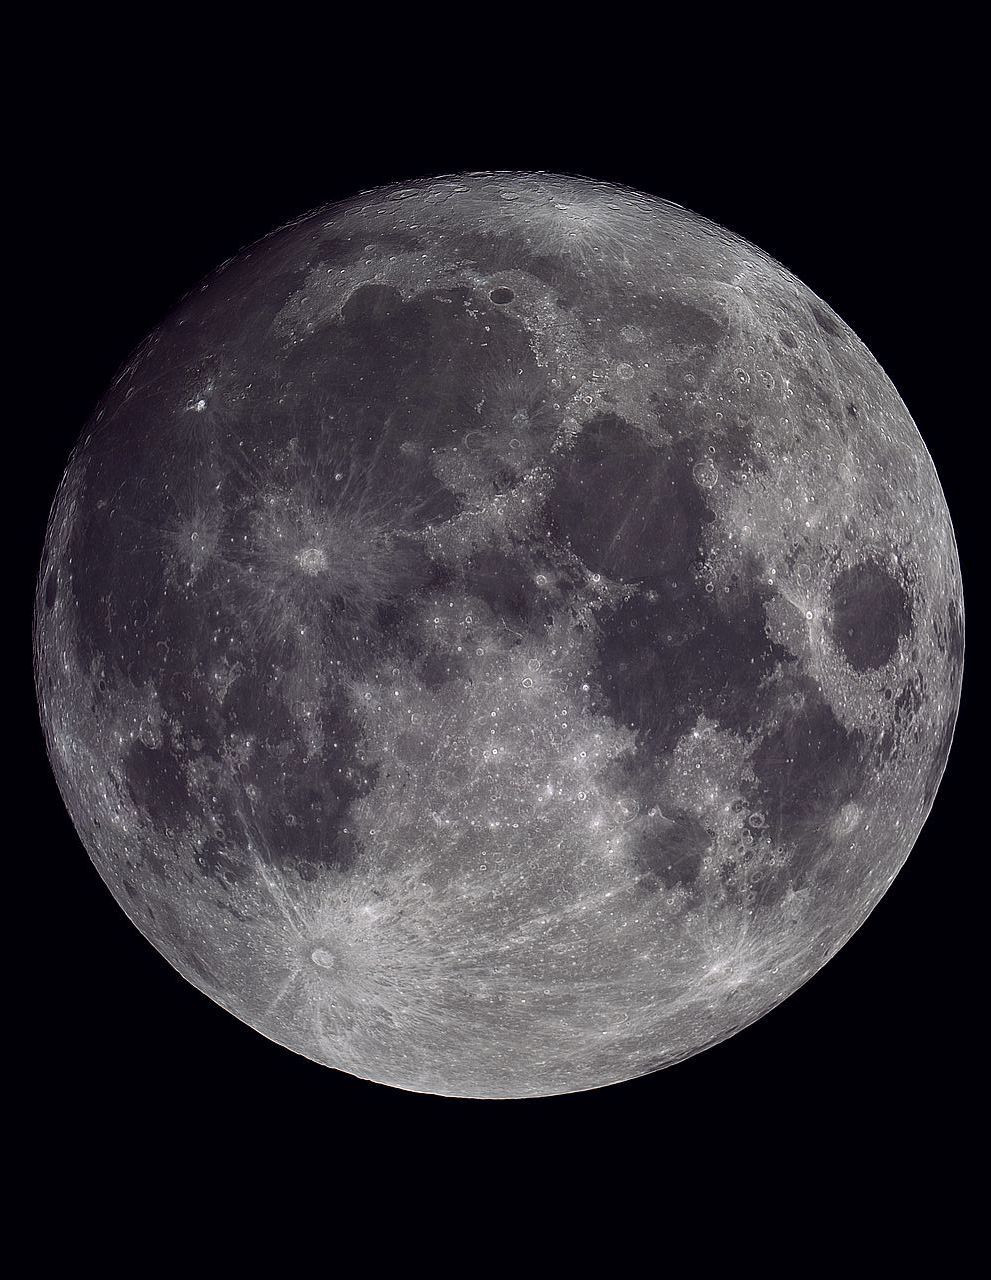 仲秋の名月の前の日の満月。めいっぱい強調。GS200RCにて 2021年9月